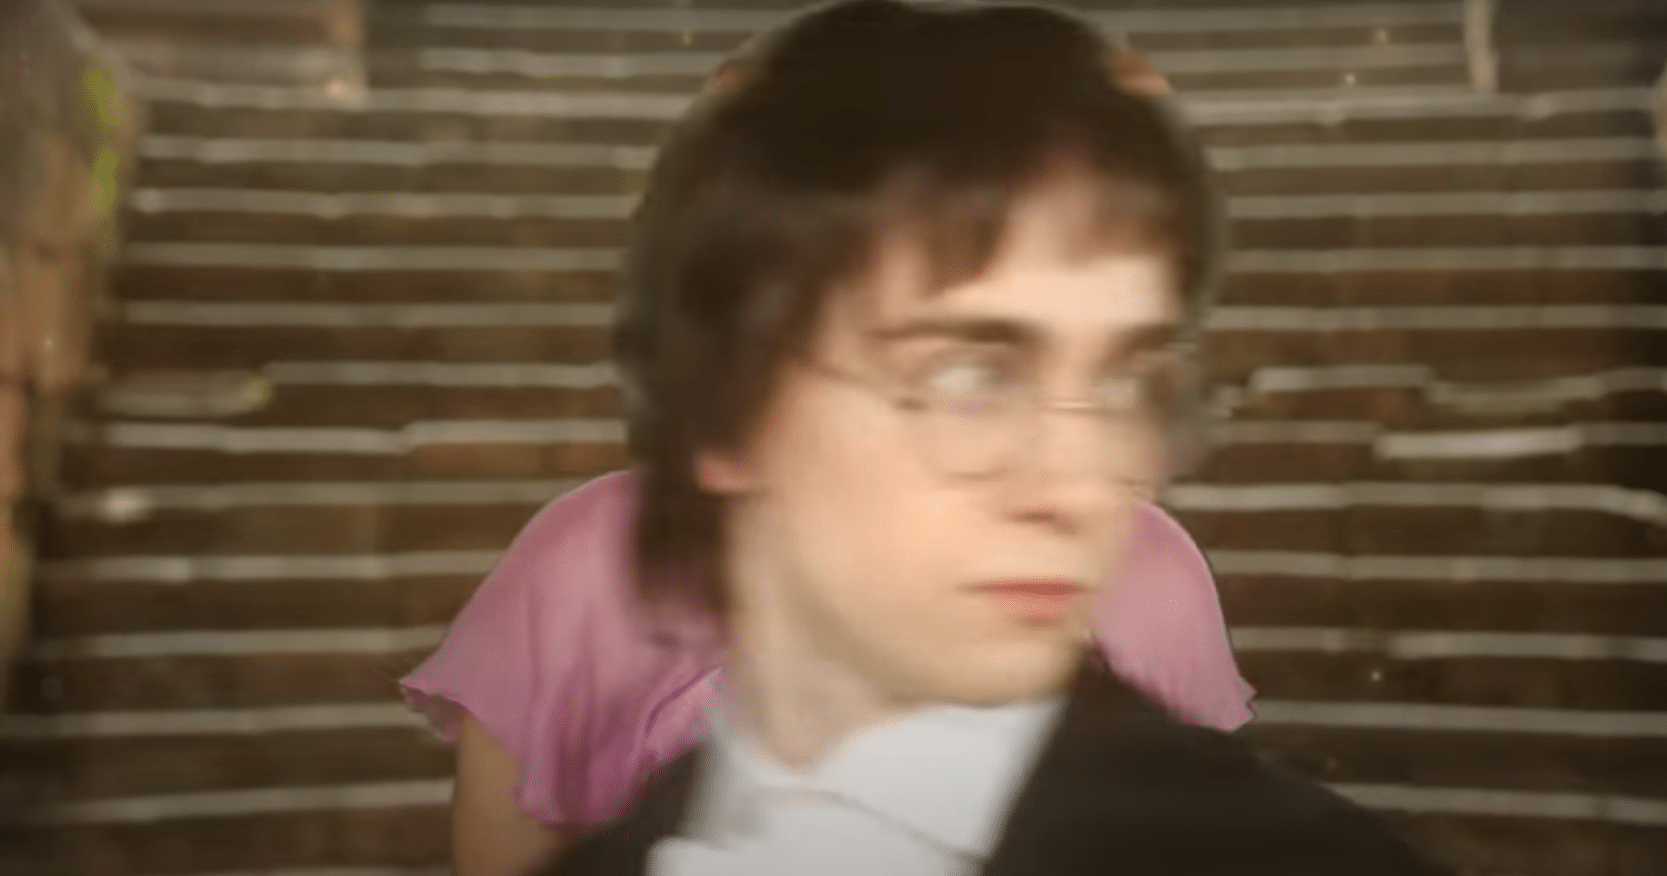 Dans le clip "It's been me", le comédien qui interprète le rôle d'Harry ressemble à s'y méprendre à Daniel Radcliffe.